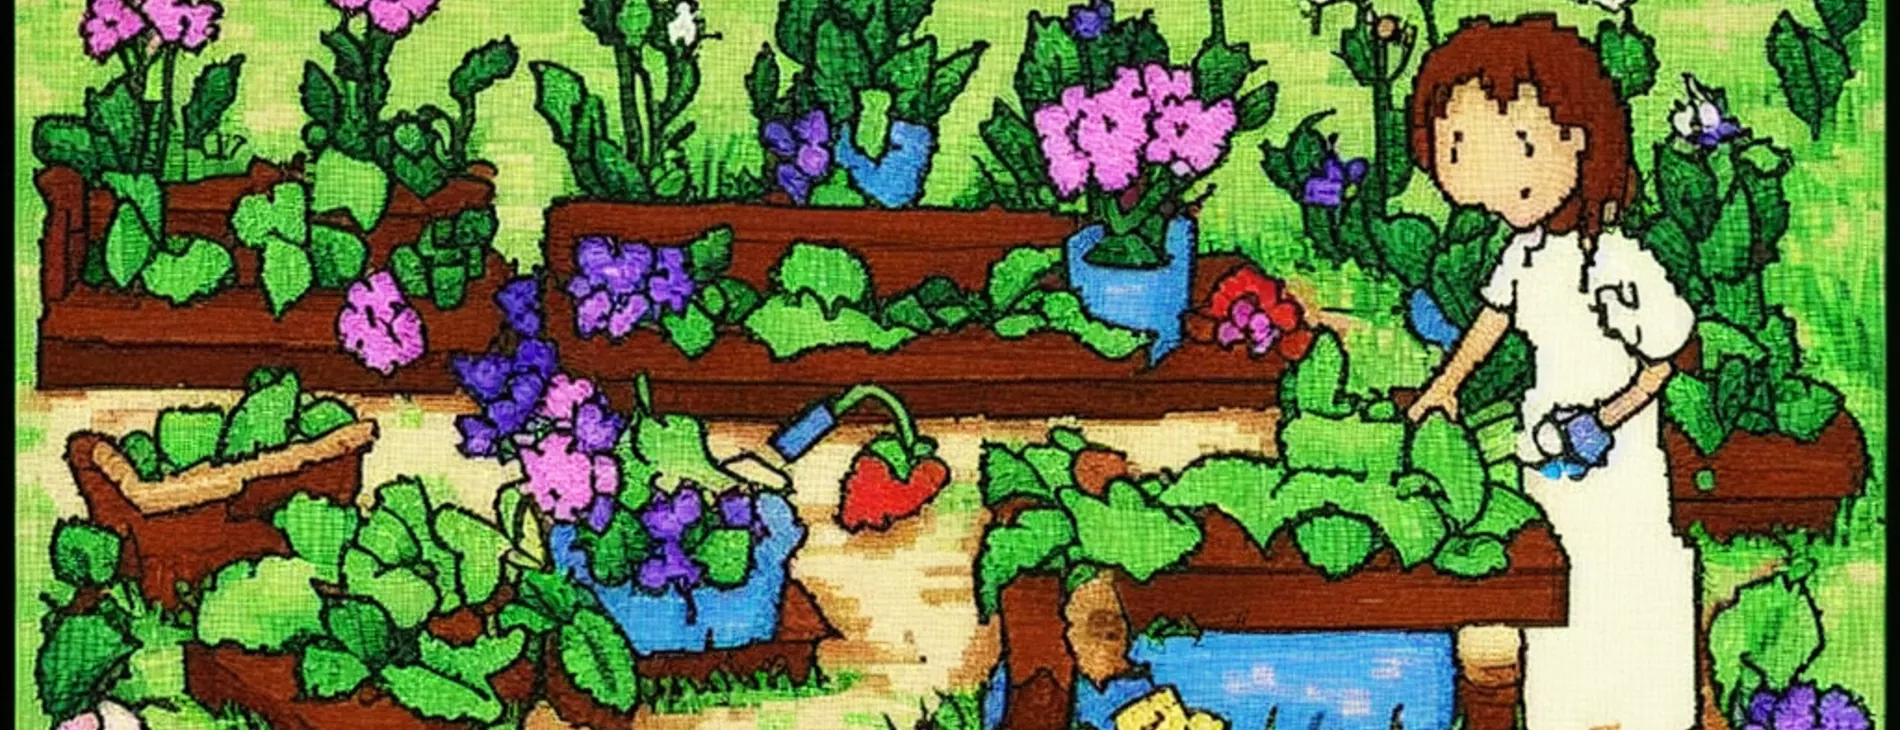 A gardener in her garden - pixelart